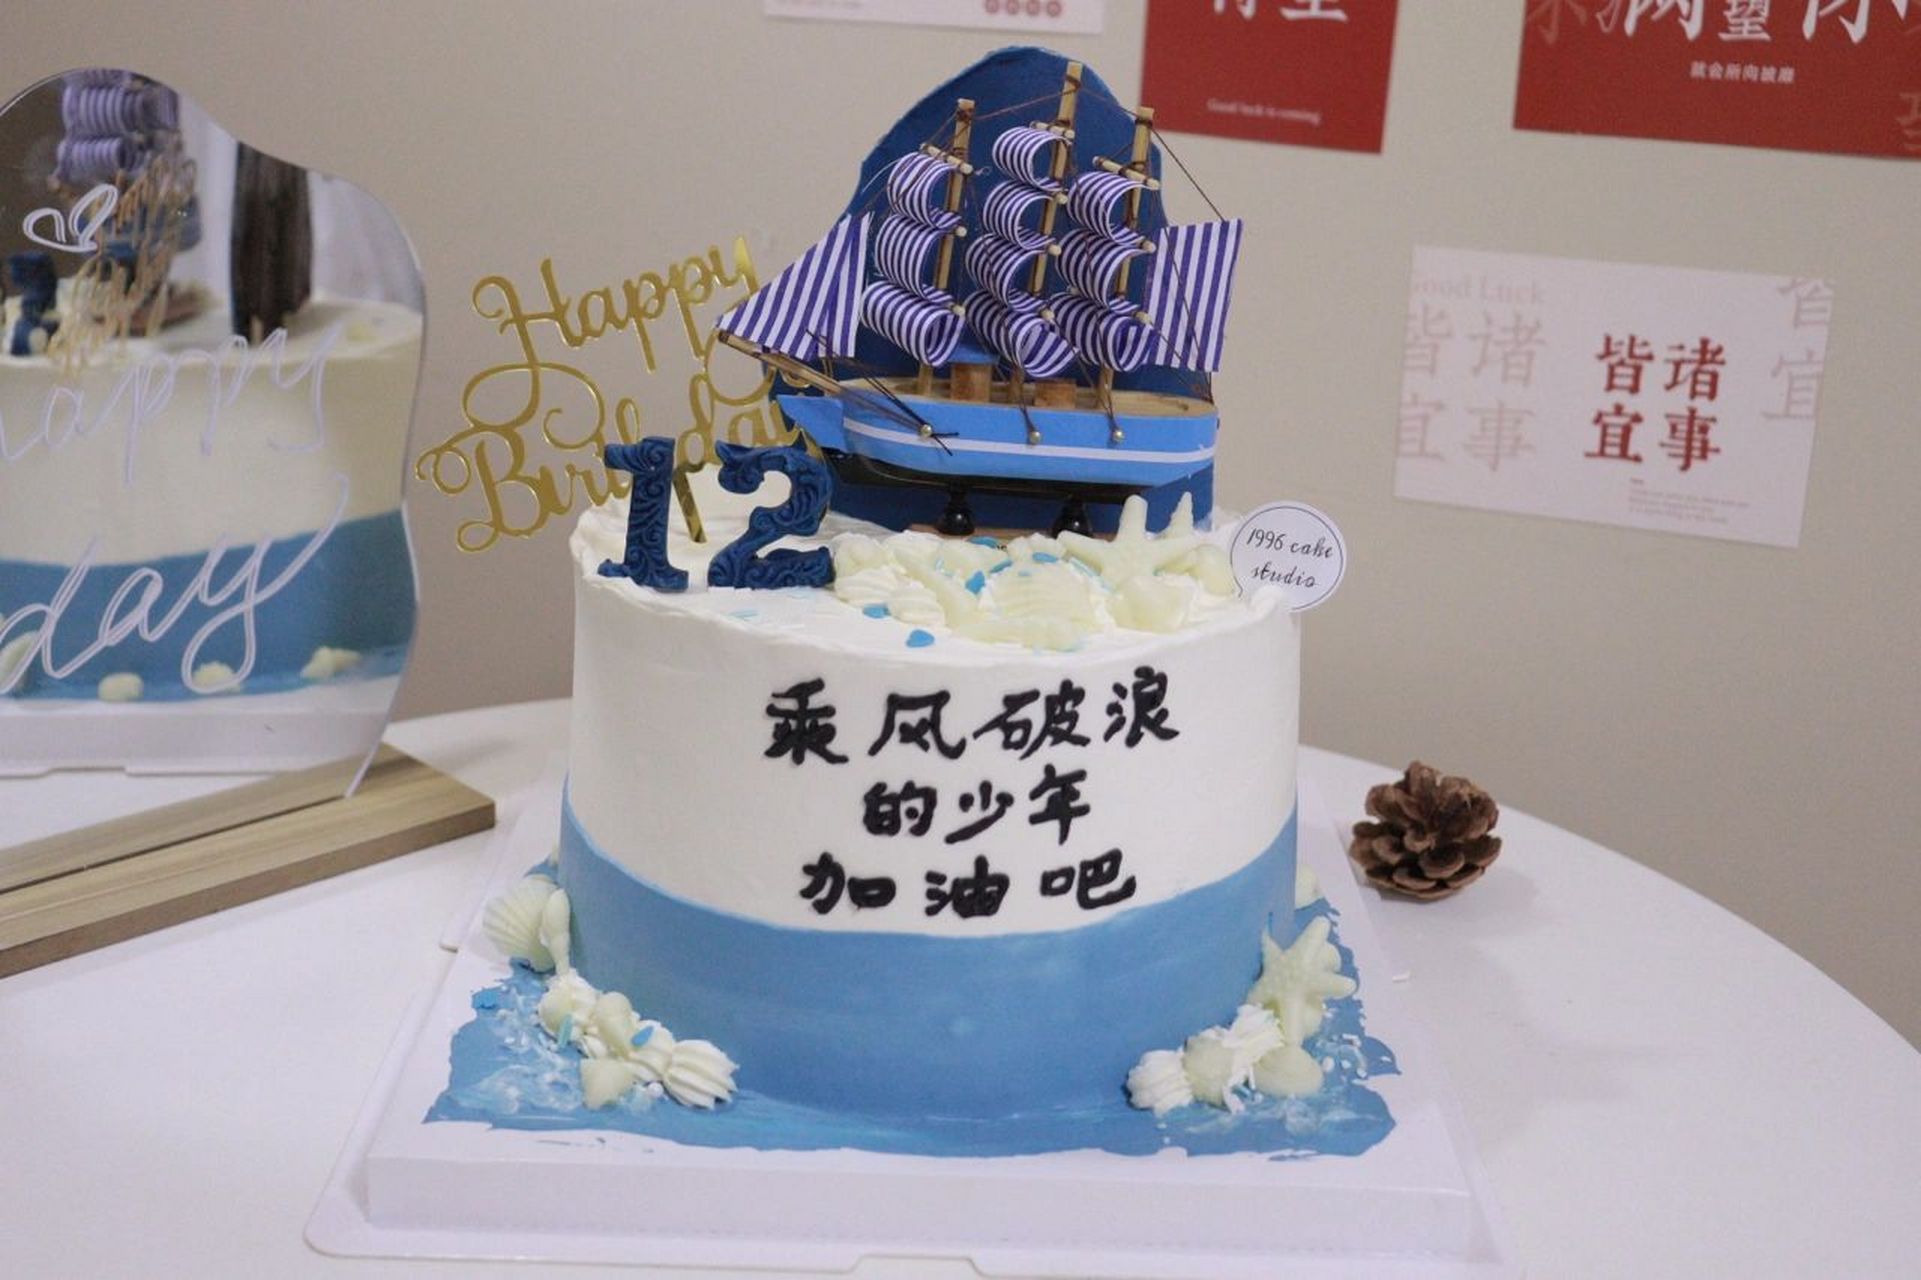 12 岁男孩生日蛋糕 帆船蛋糕乘风破浪